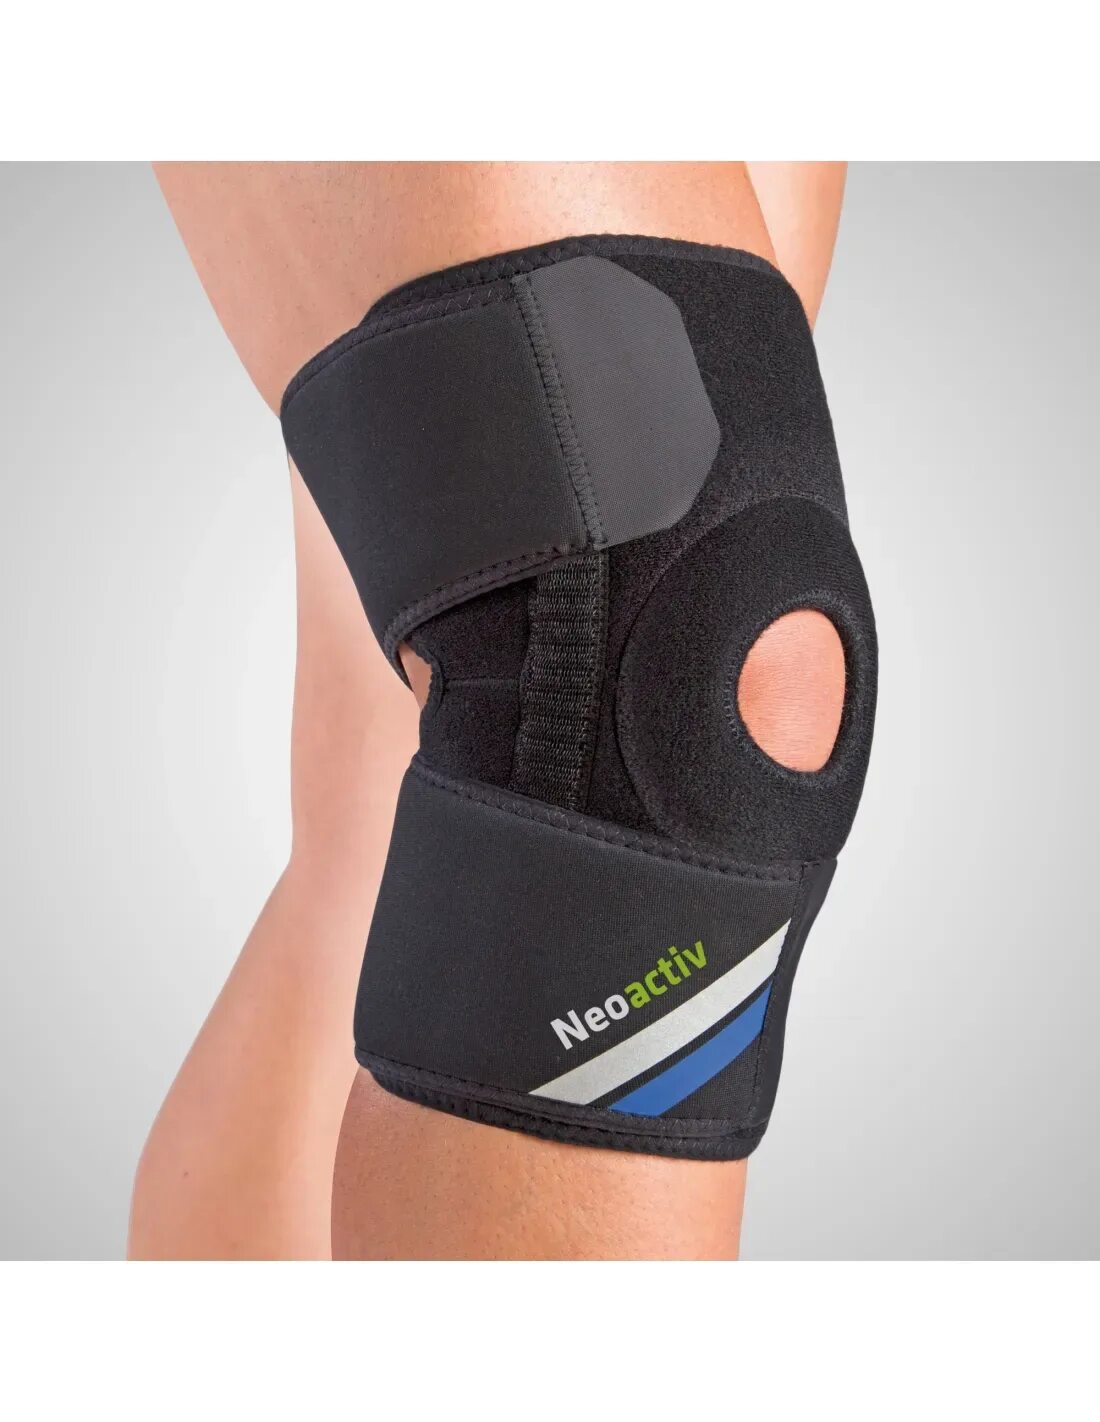 Усиленные суставы. FASTBOX ортез коленного стабилизатор. Бандаж на коленный сустав. Ортез на коленный сустав. Бандаж на колено ортопедический.